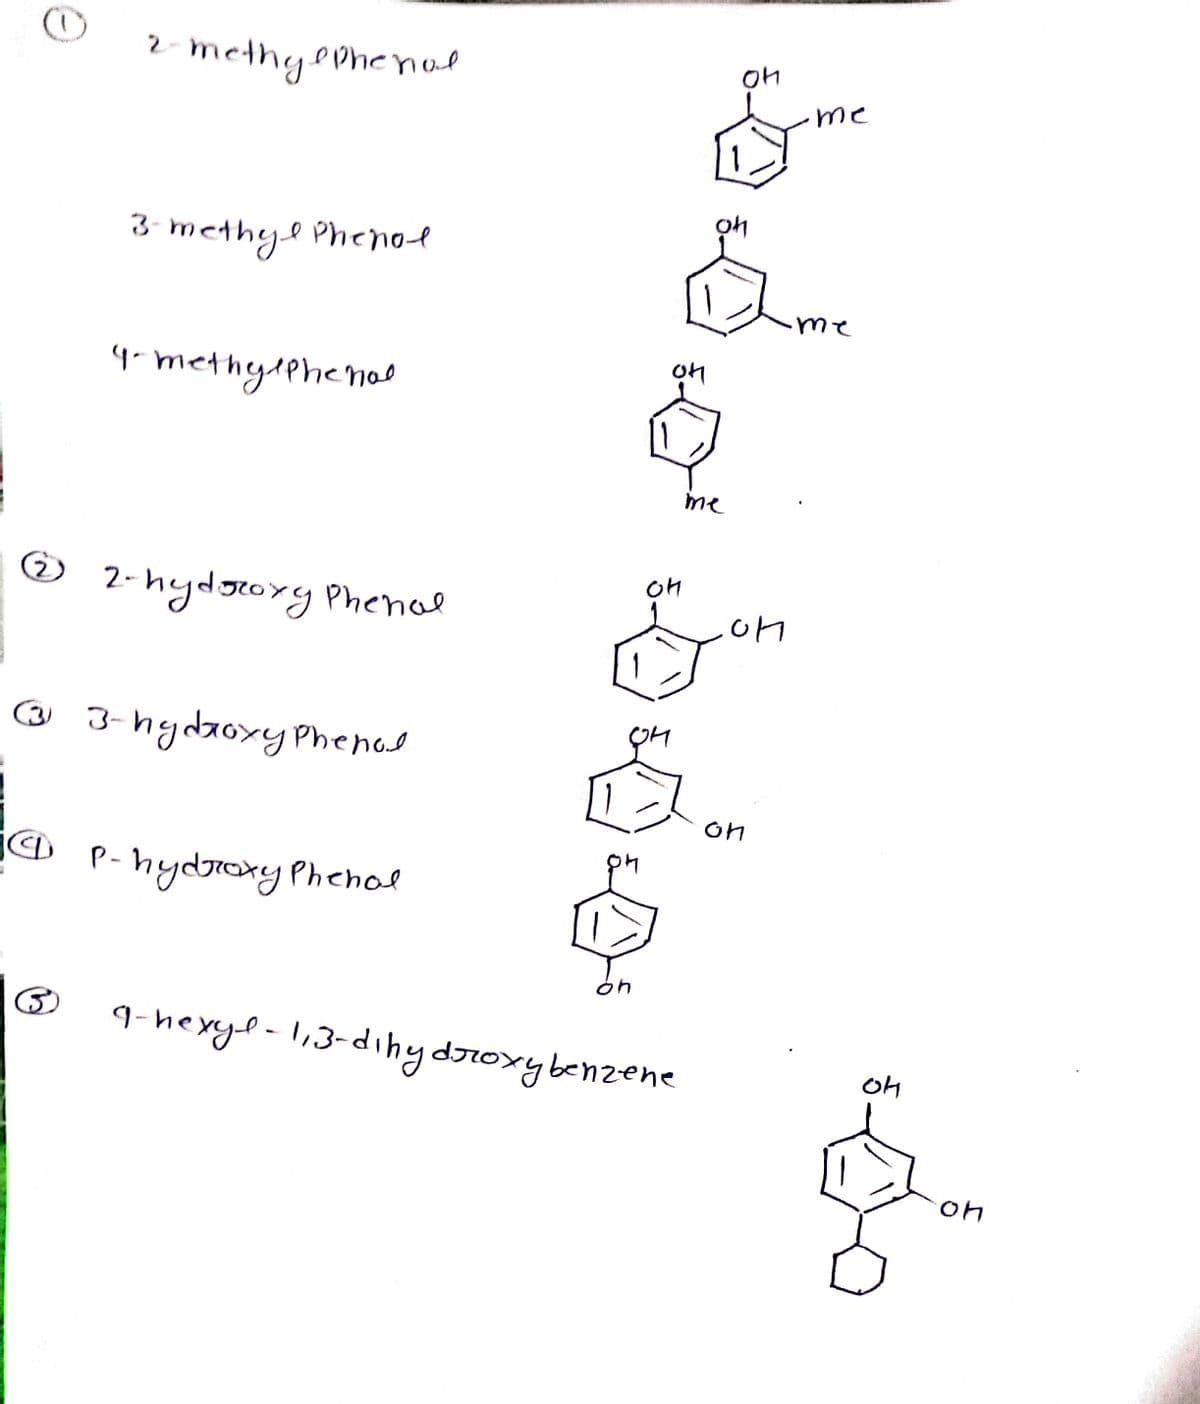 2- methyePhenal
me
3 methyl Phenol
4- methydphenol
me
O 2-hydgory Phenol
OM
☺ 3-hydaoxy Phenol
on
j@ P- hydroxy Phenol
9-hexyl-1,3-dinydroxybenzene
OH
on
